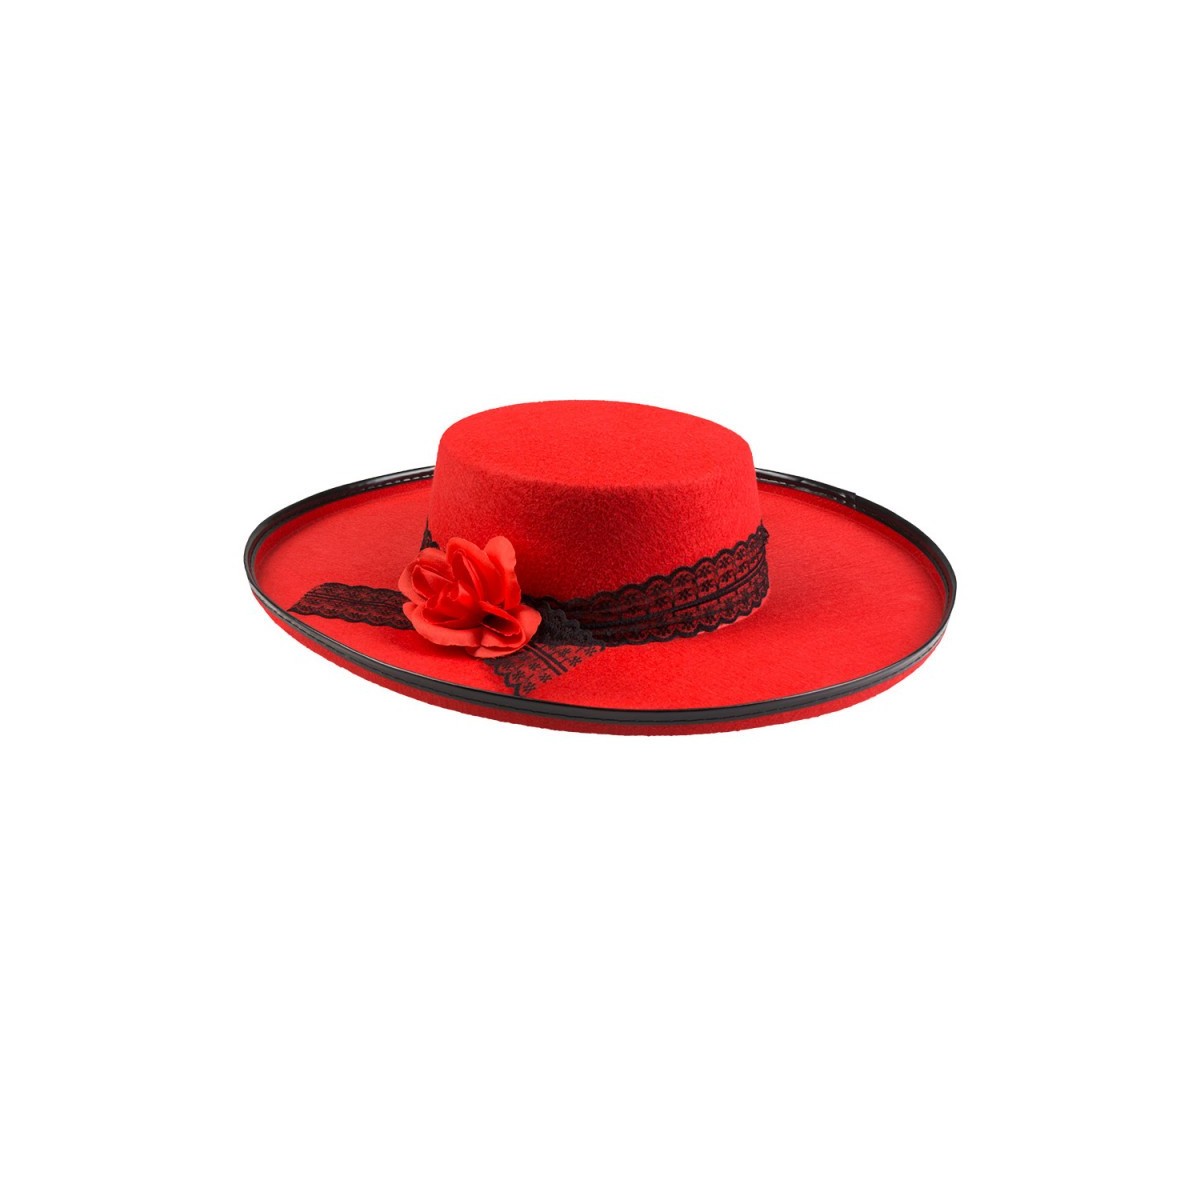 Chapeau de Senorita espagnole noir et pompons rouges